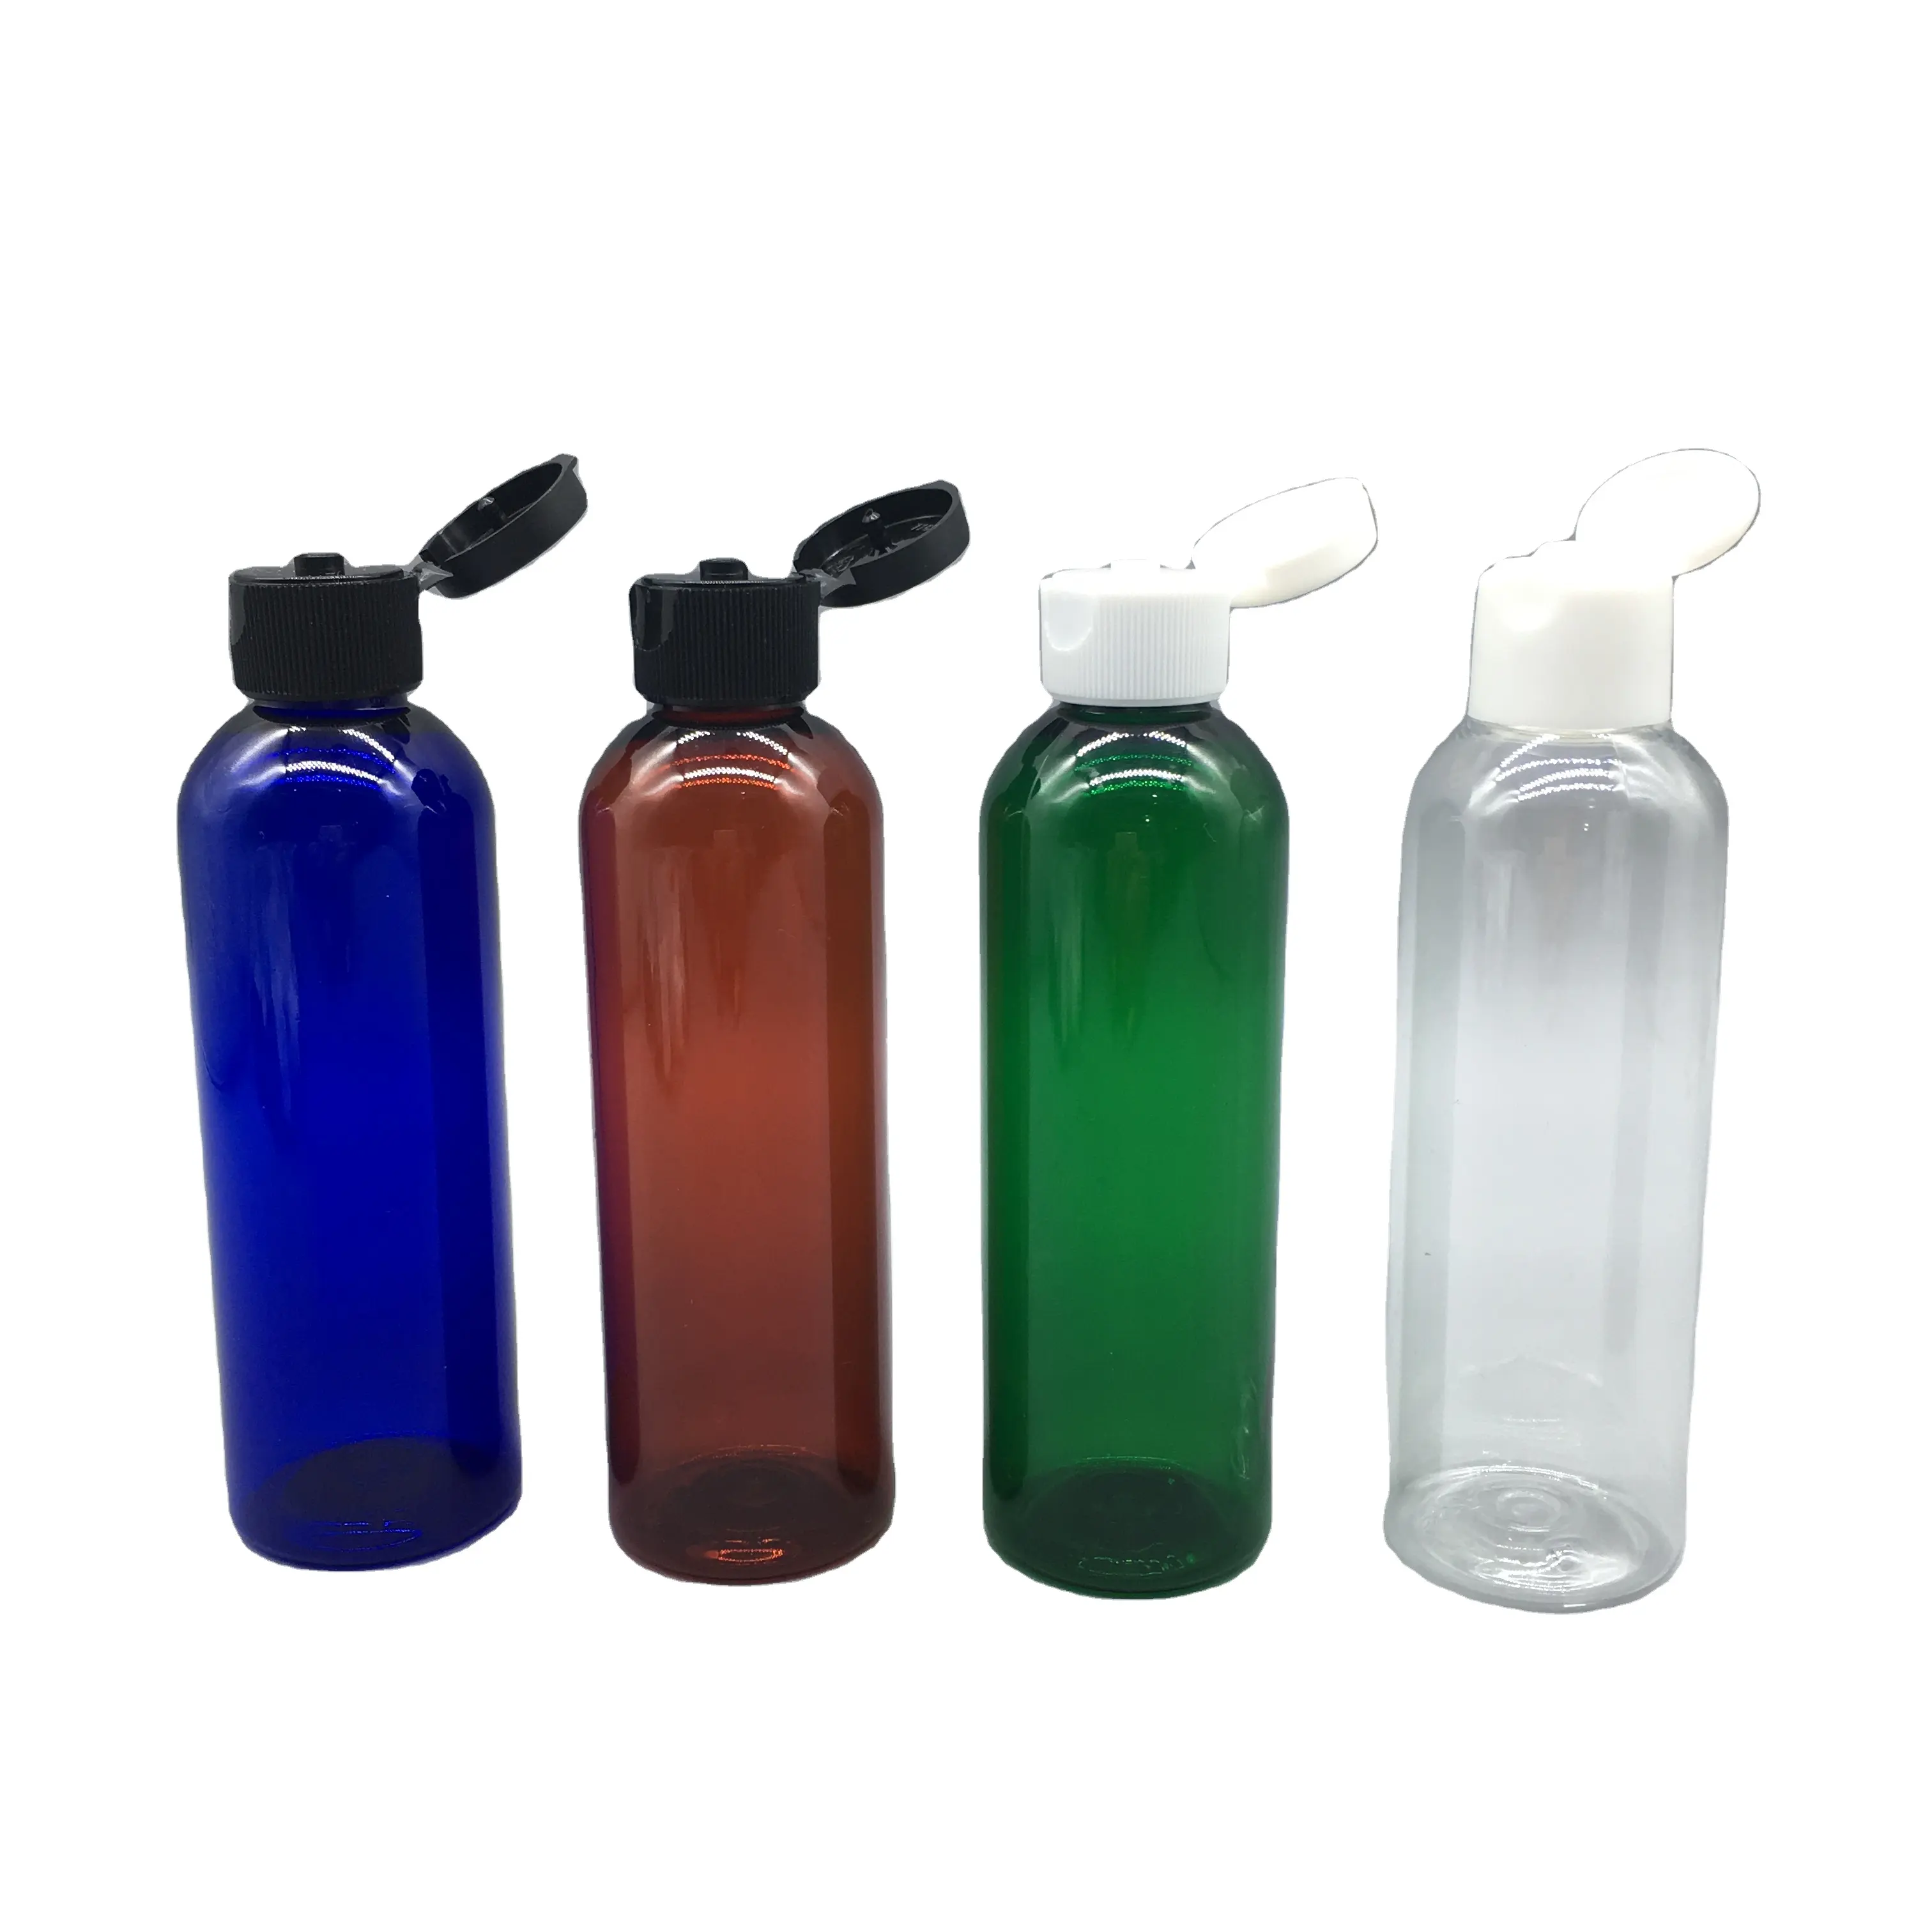 Garrafa de plástico da garrafa do animal de estimação, venda quente do logotipo personalizado bom fornecedor 4oz 120ml